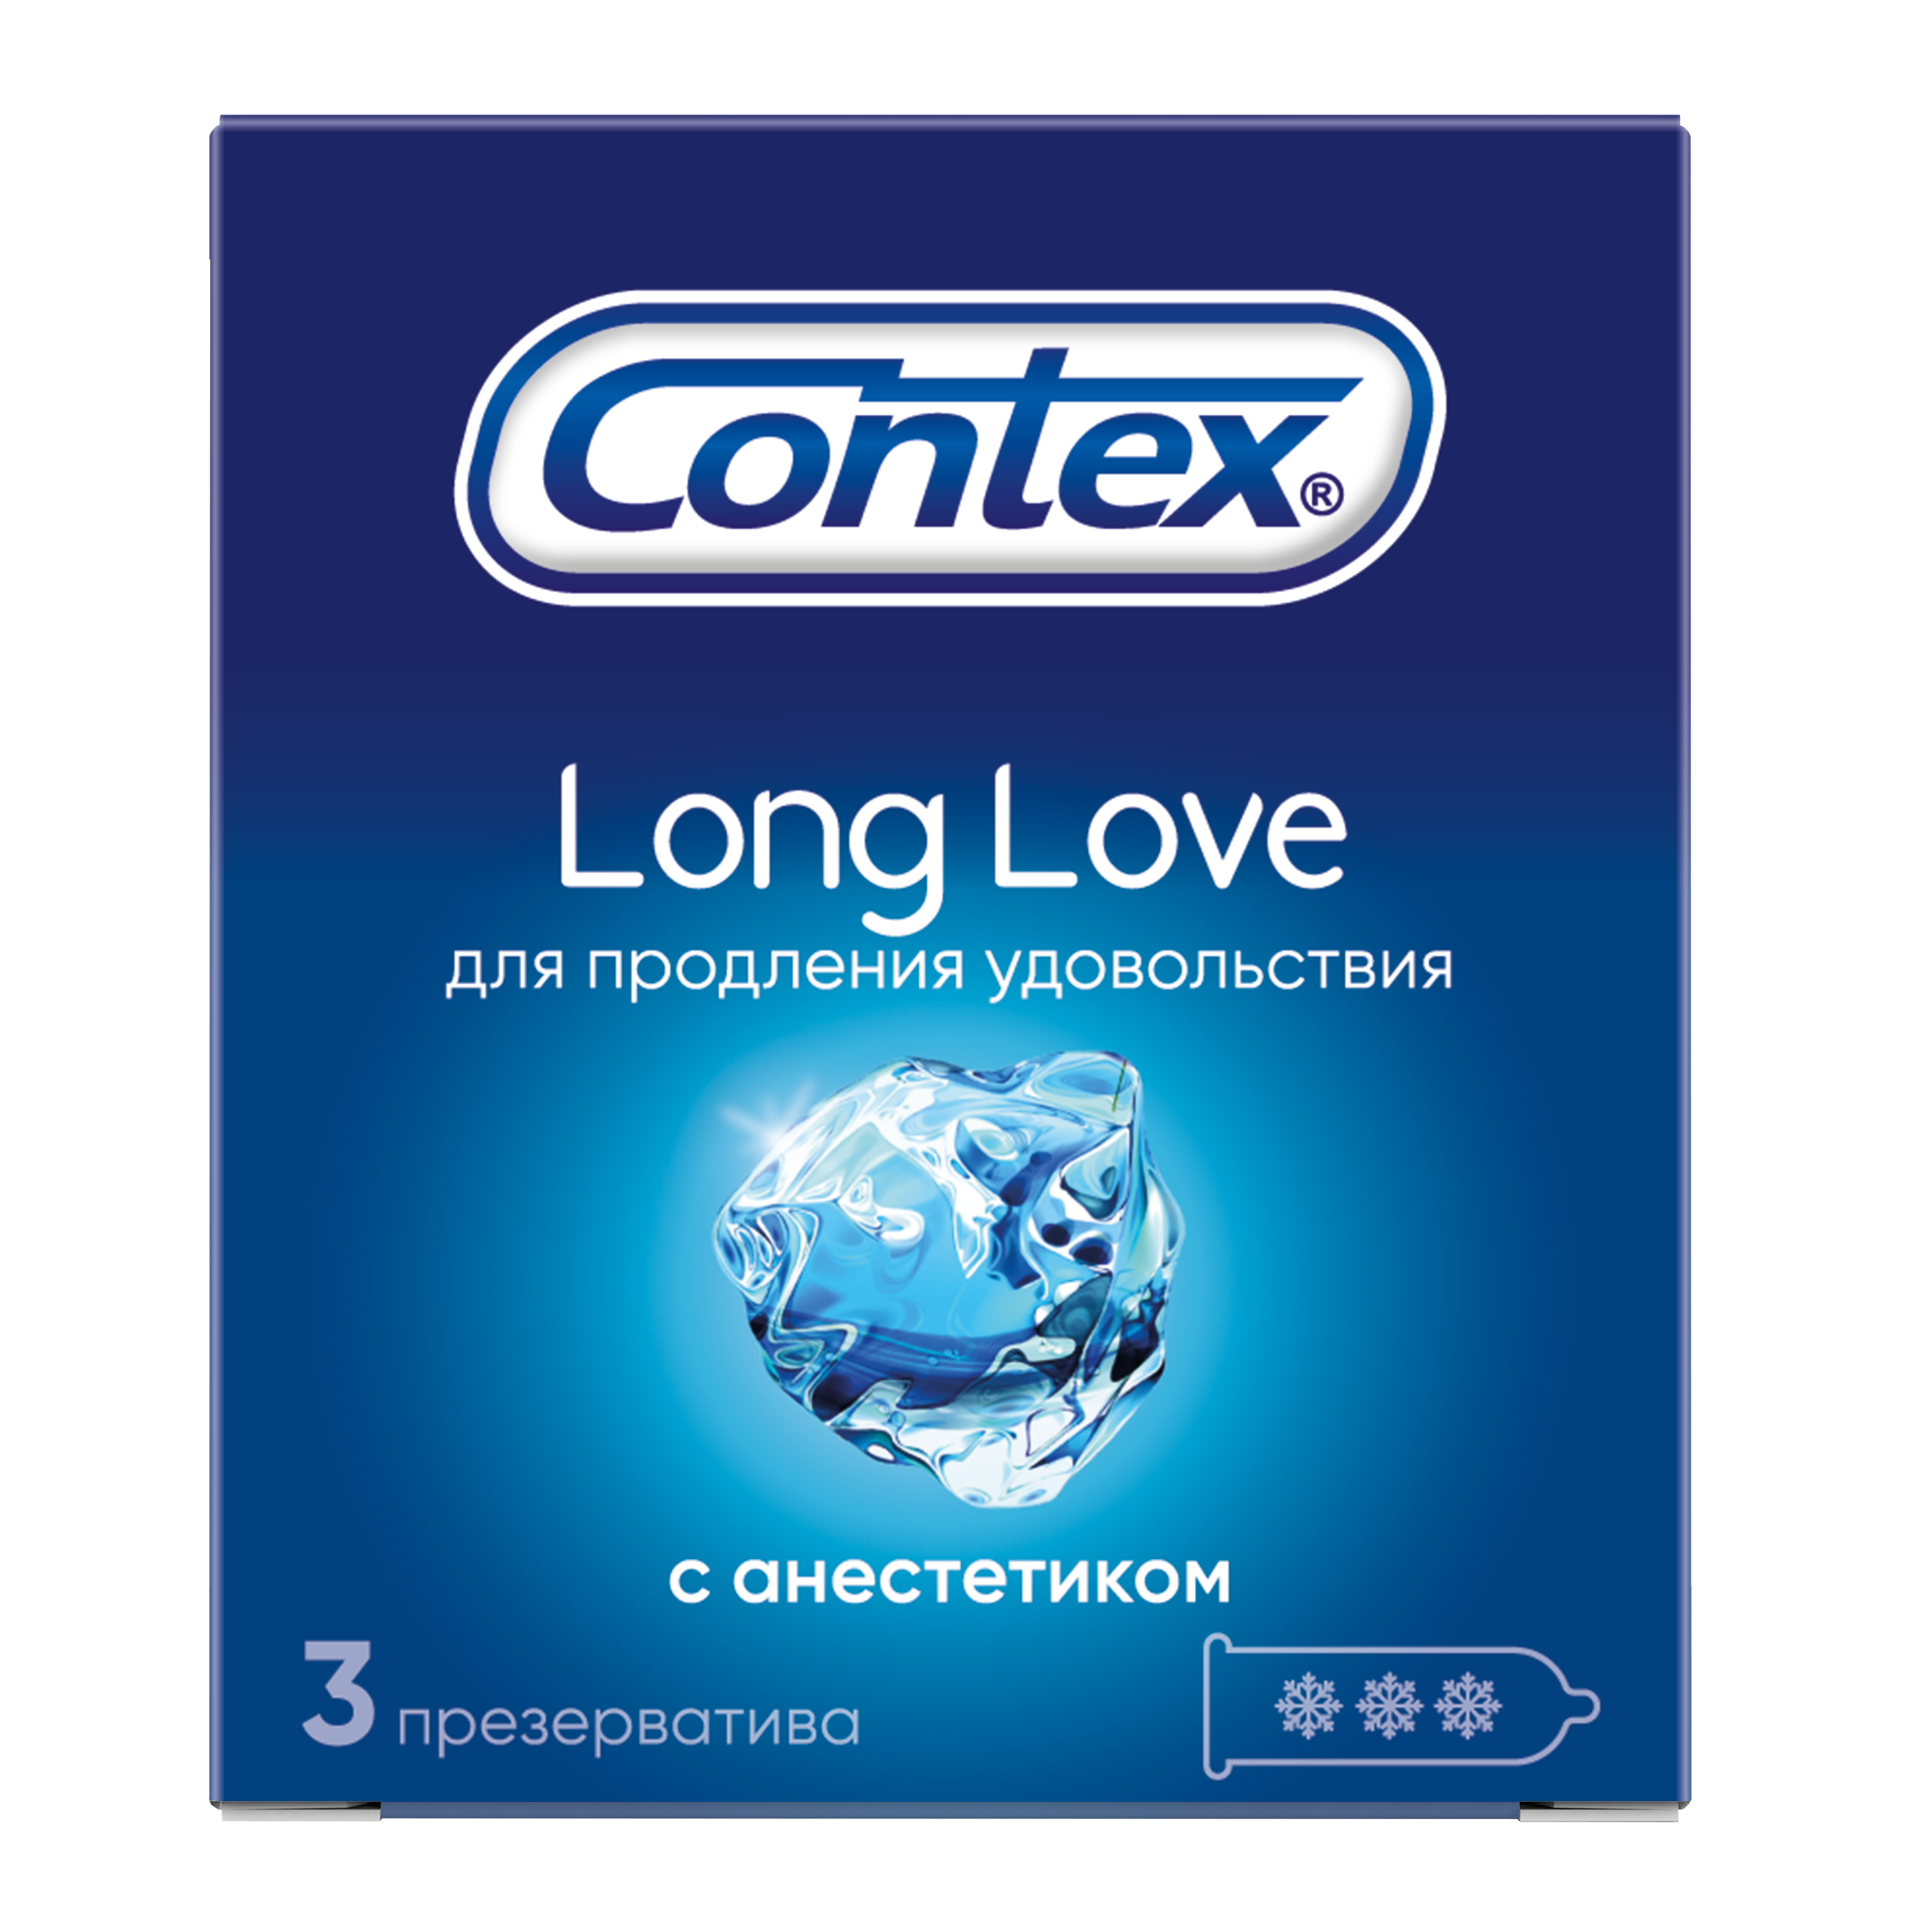 Лонг лов. Contex long Love 3 шт. Презерватив Контекс long Love 3шт. Презервативы Контекс (Contex) long Love. Презервативы Контекс с анестетиком.